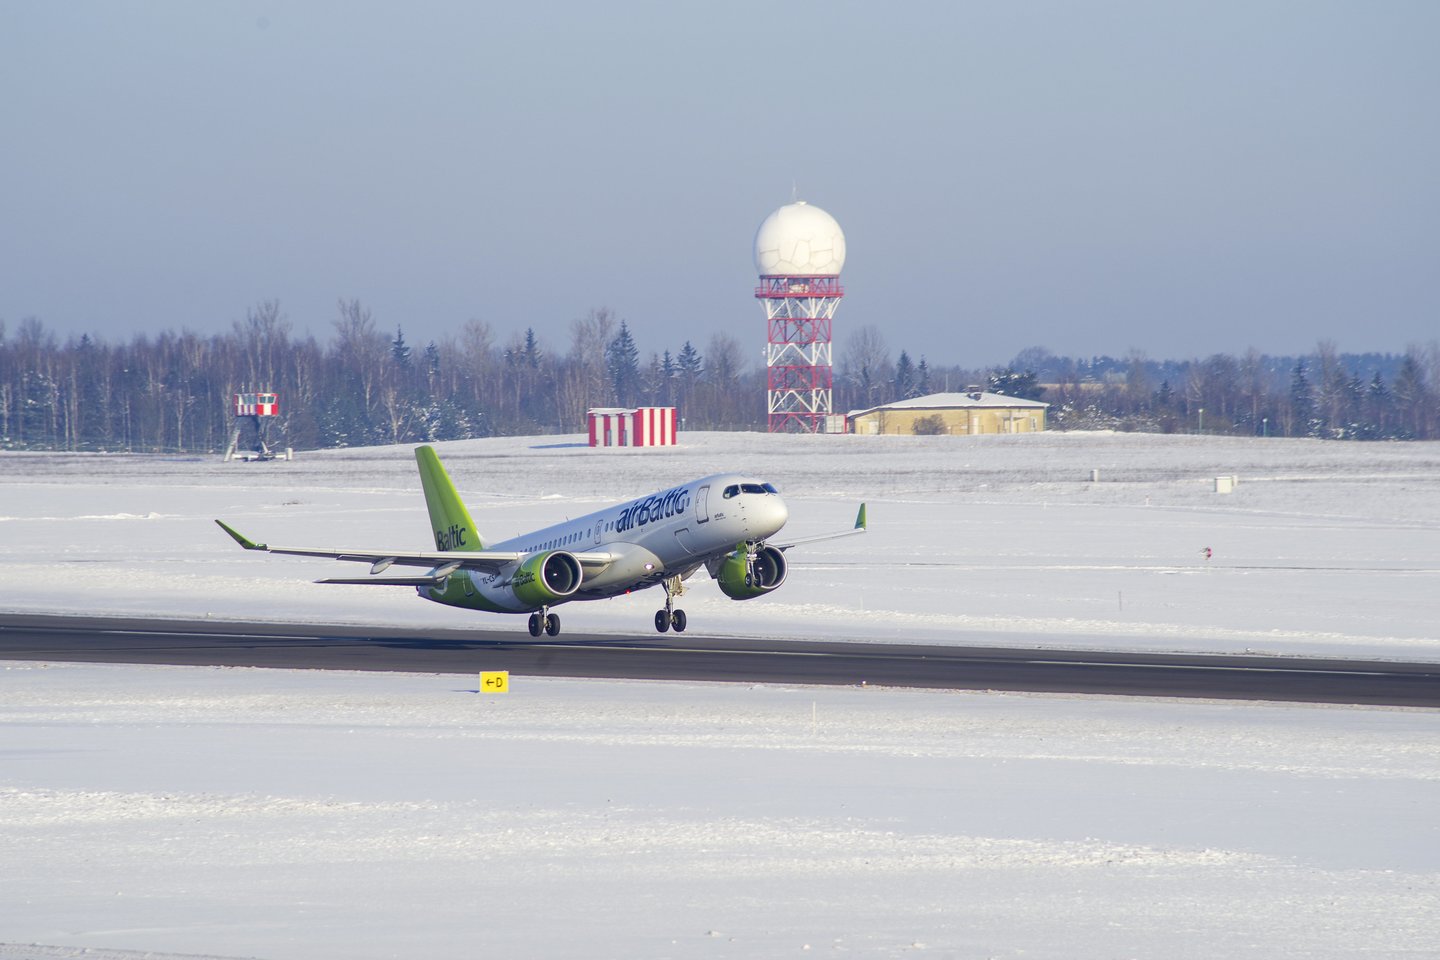 Lietuvos oro uostų nebenaudojamo turto aukcionas praėjusį antradienį užsidarė fiksuodamas rekordinius skaičius.<br>V.Ščiavinsko nuotr.